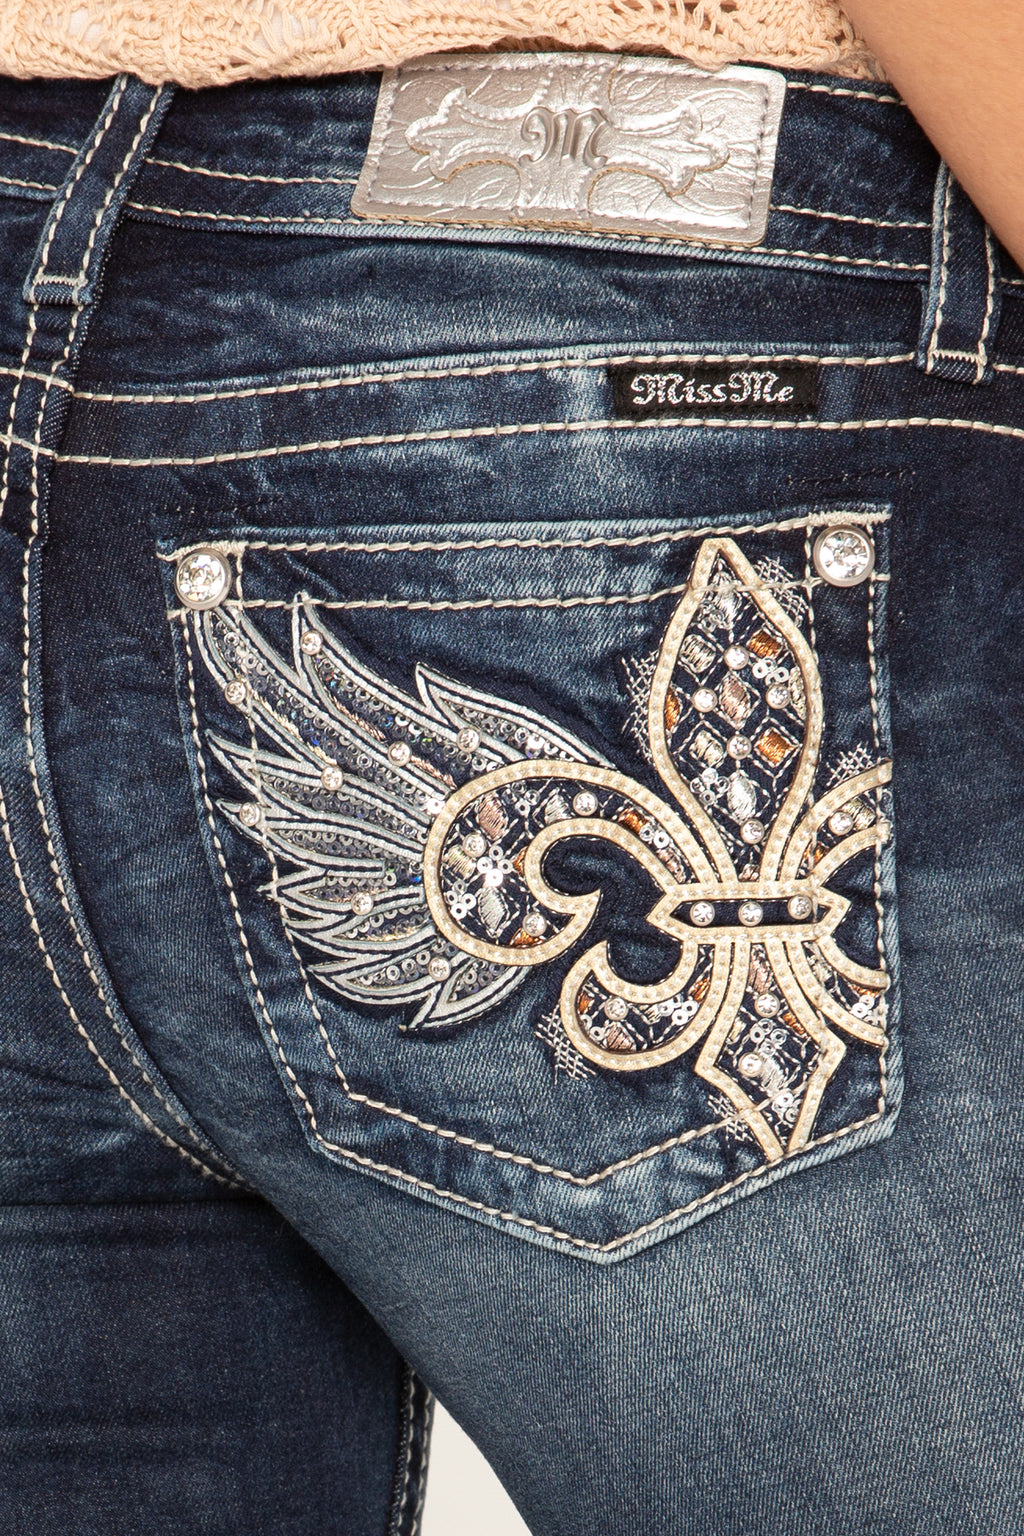 jeans with fleur de lis on pocket